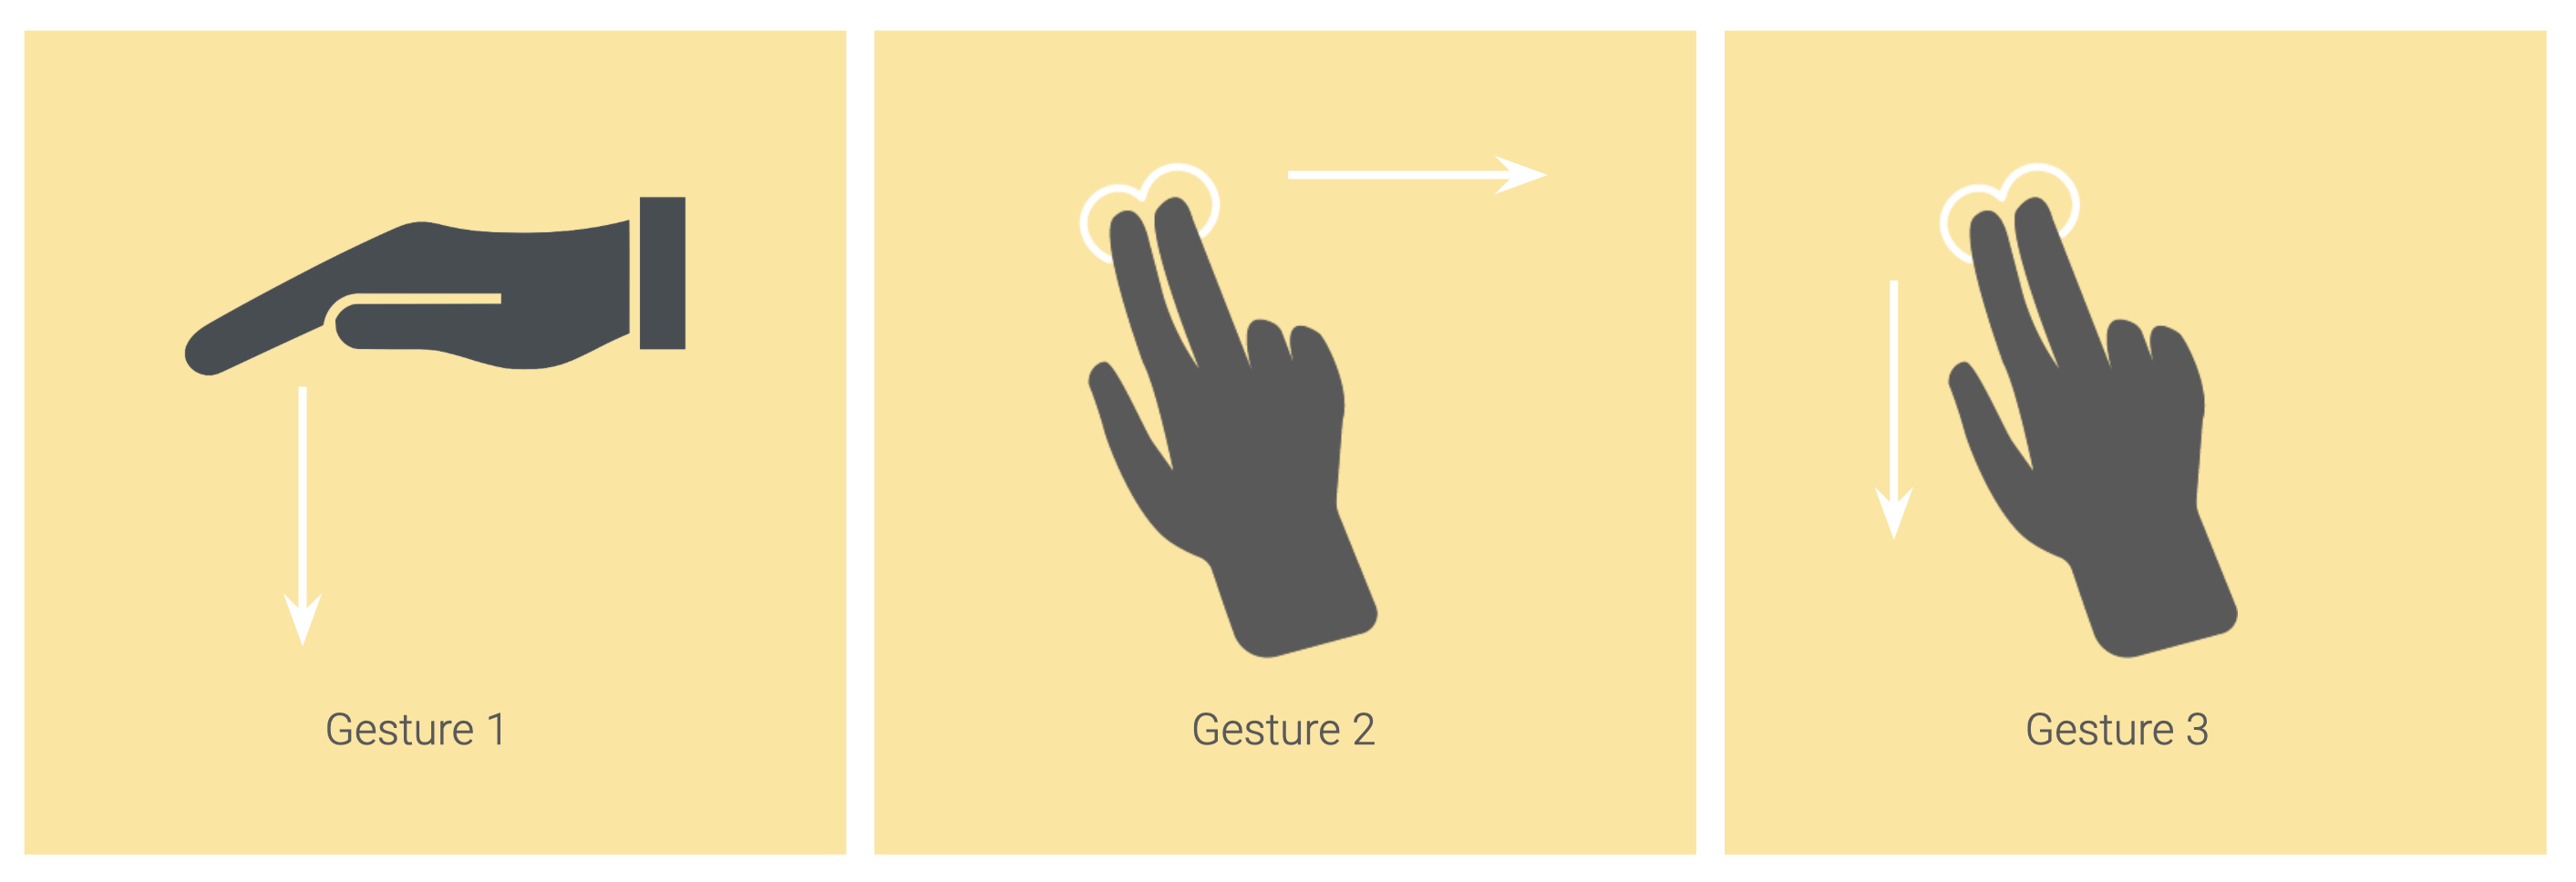 hand gestures image